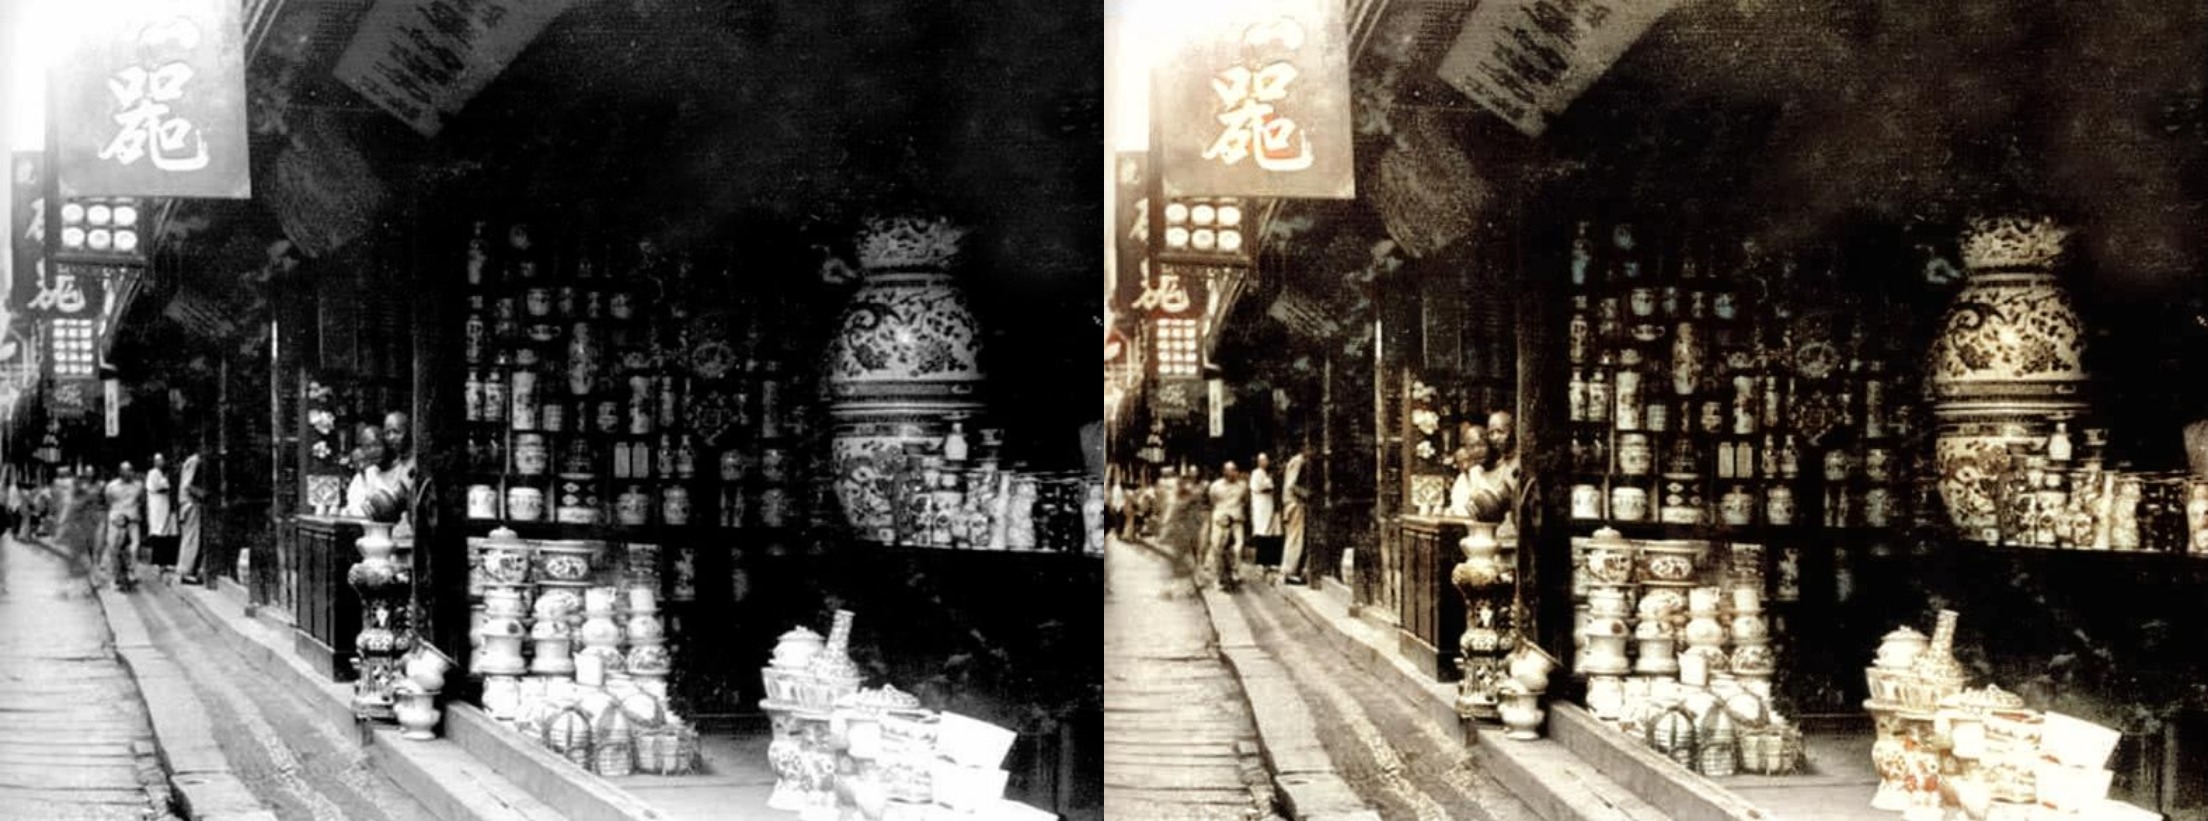 上海街边的瓷器店 colorized-image-comparison